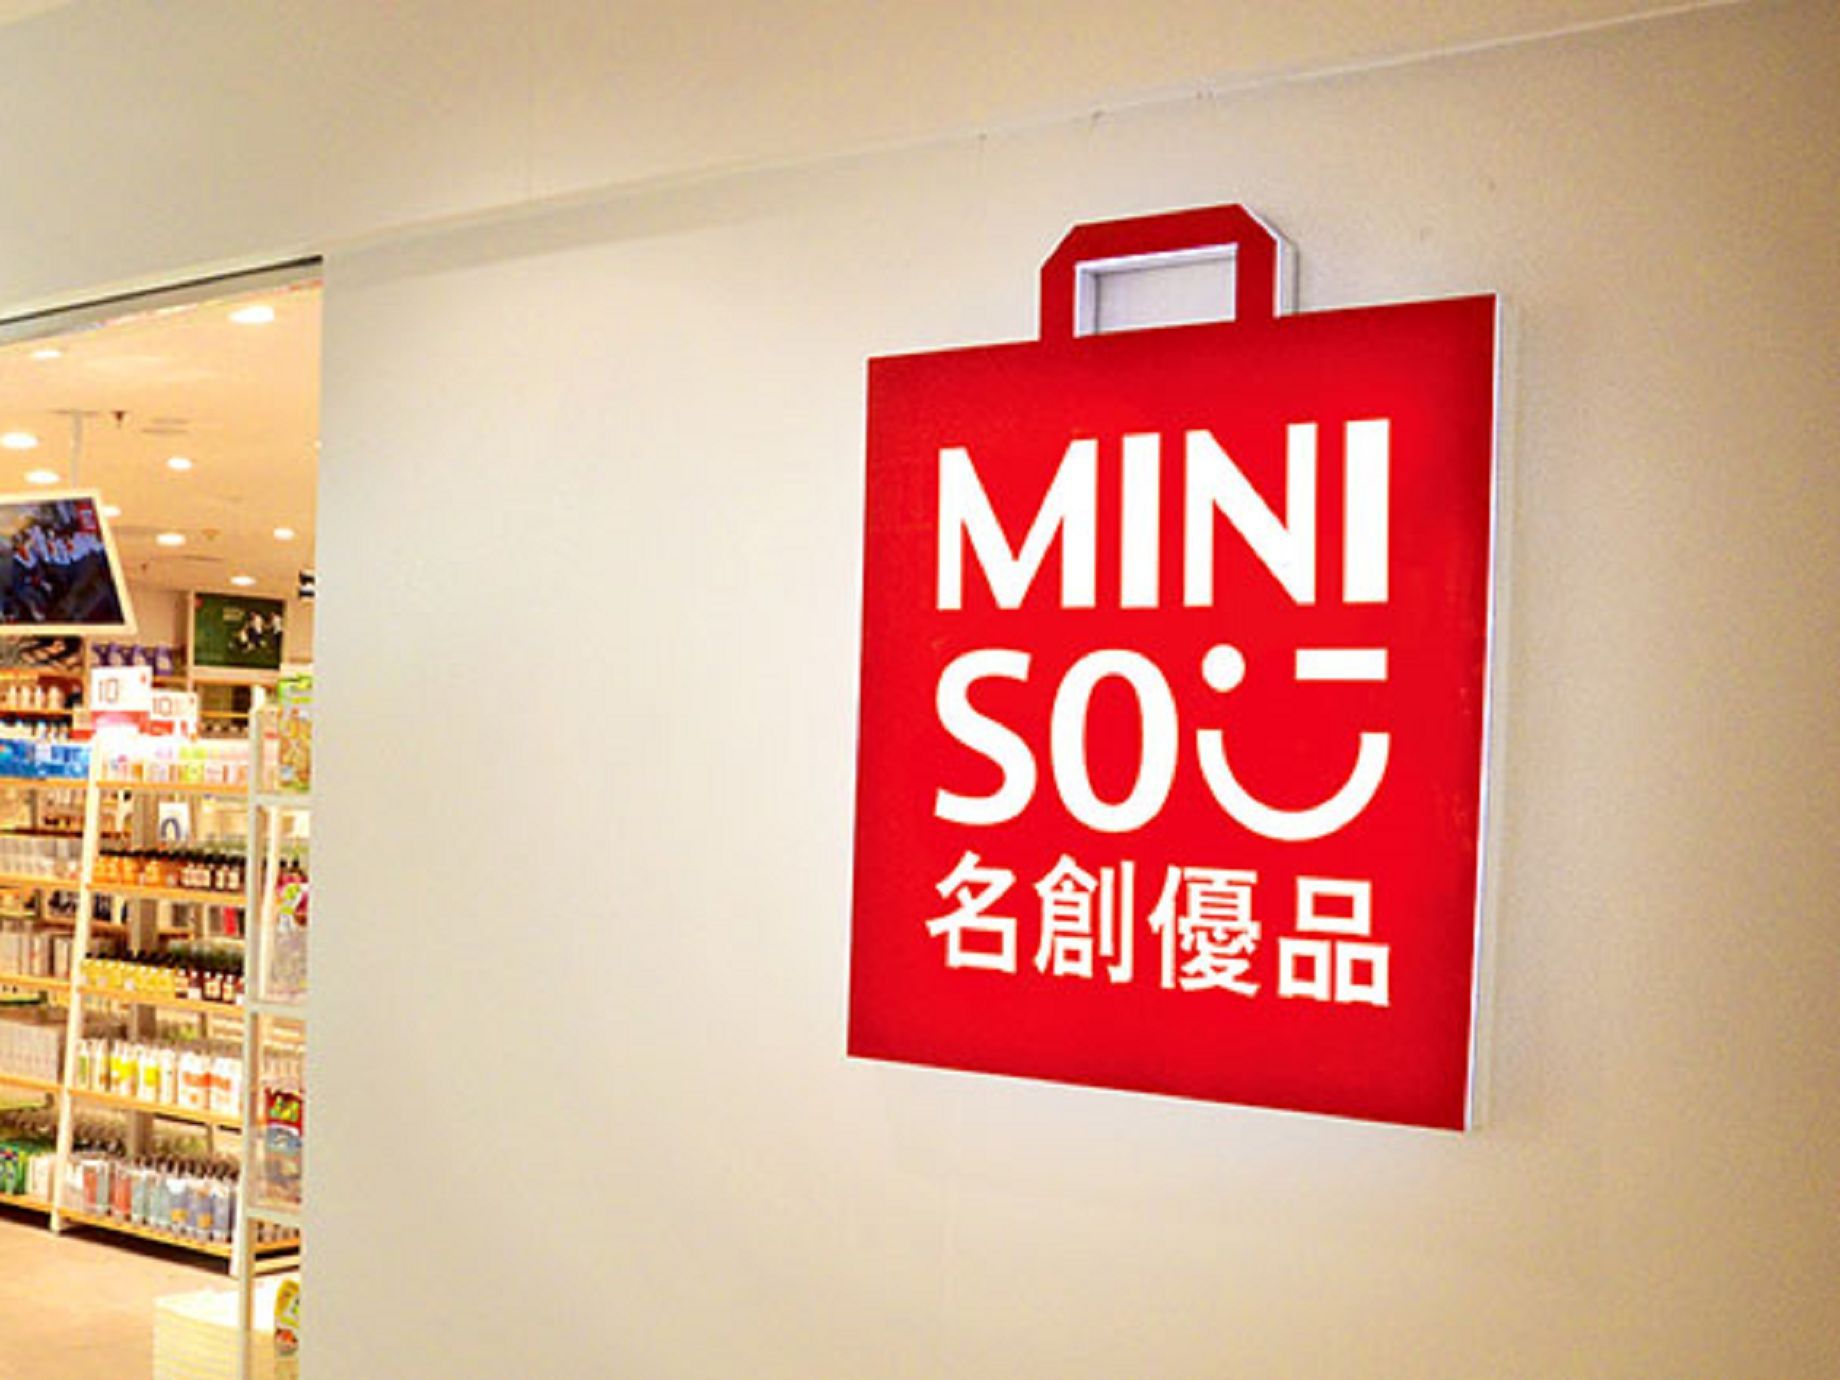 1件商品10塊錢1年賣出100億，MINISO重改實體零售獲利模式